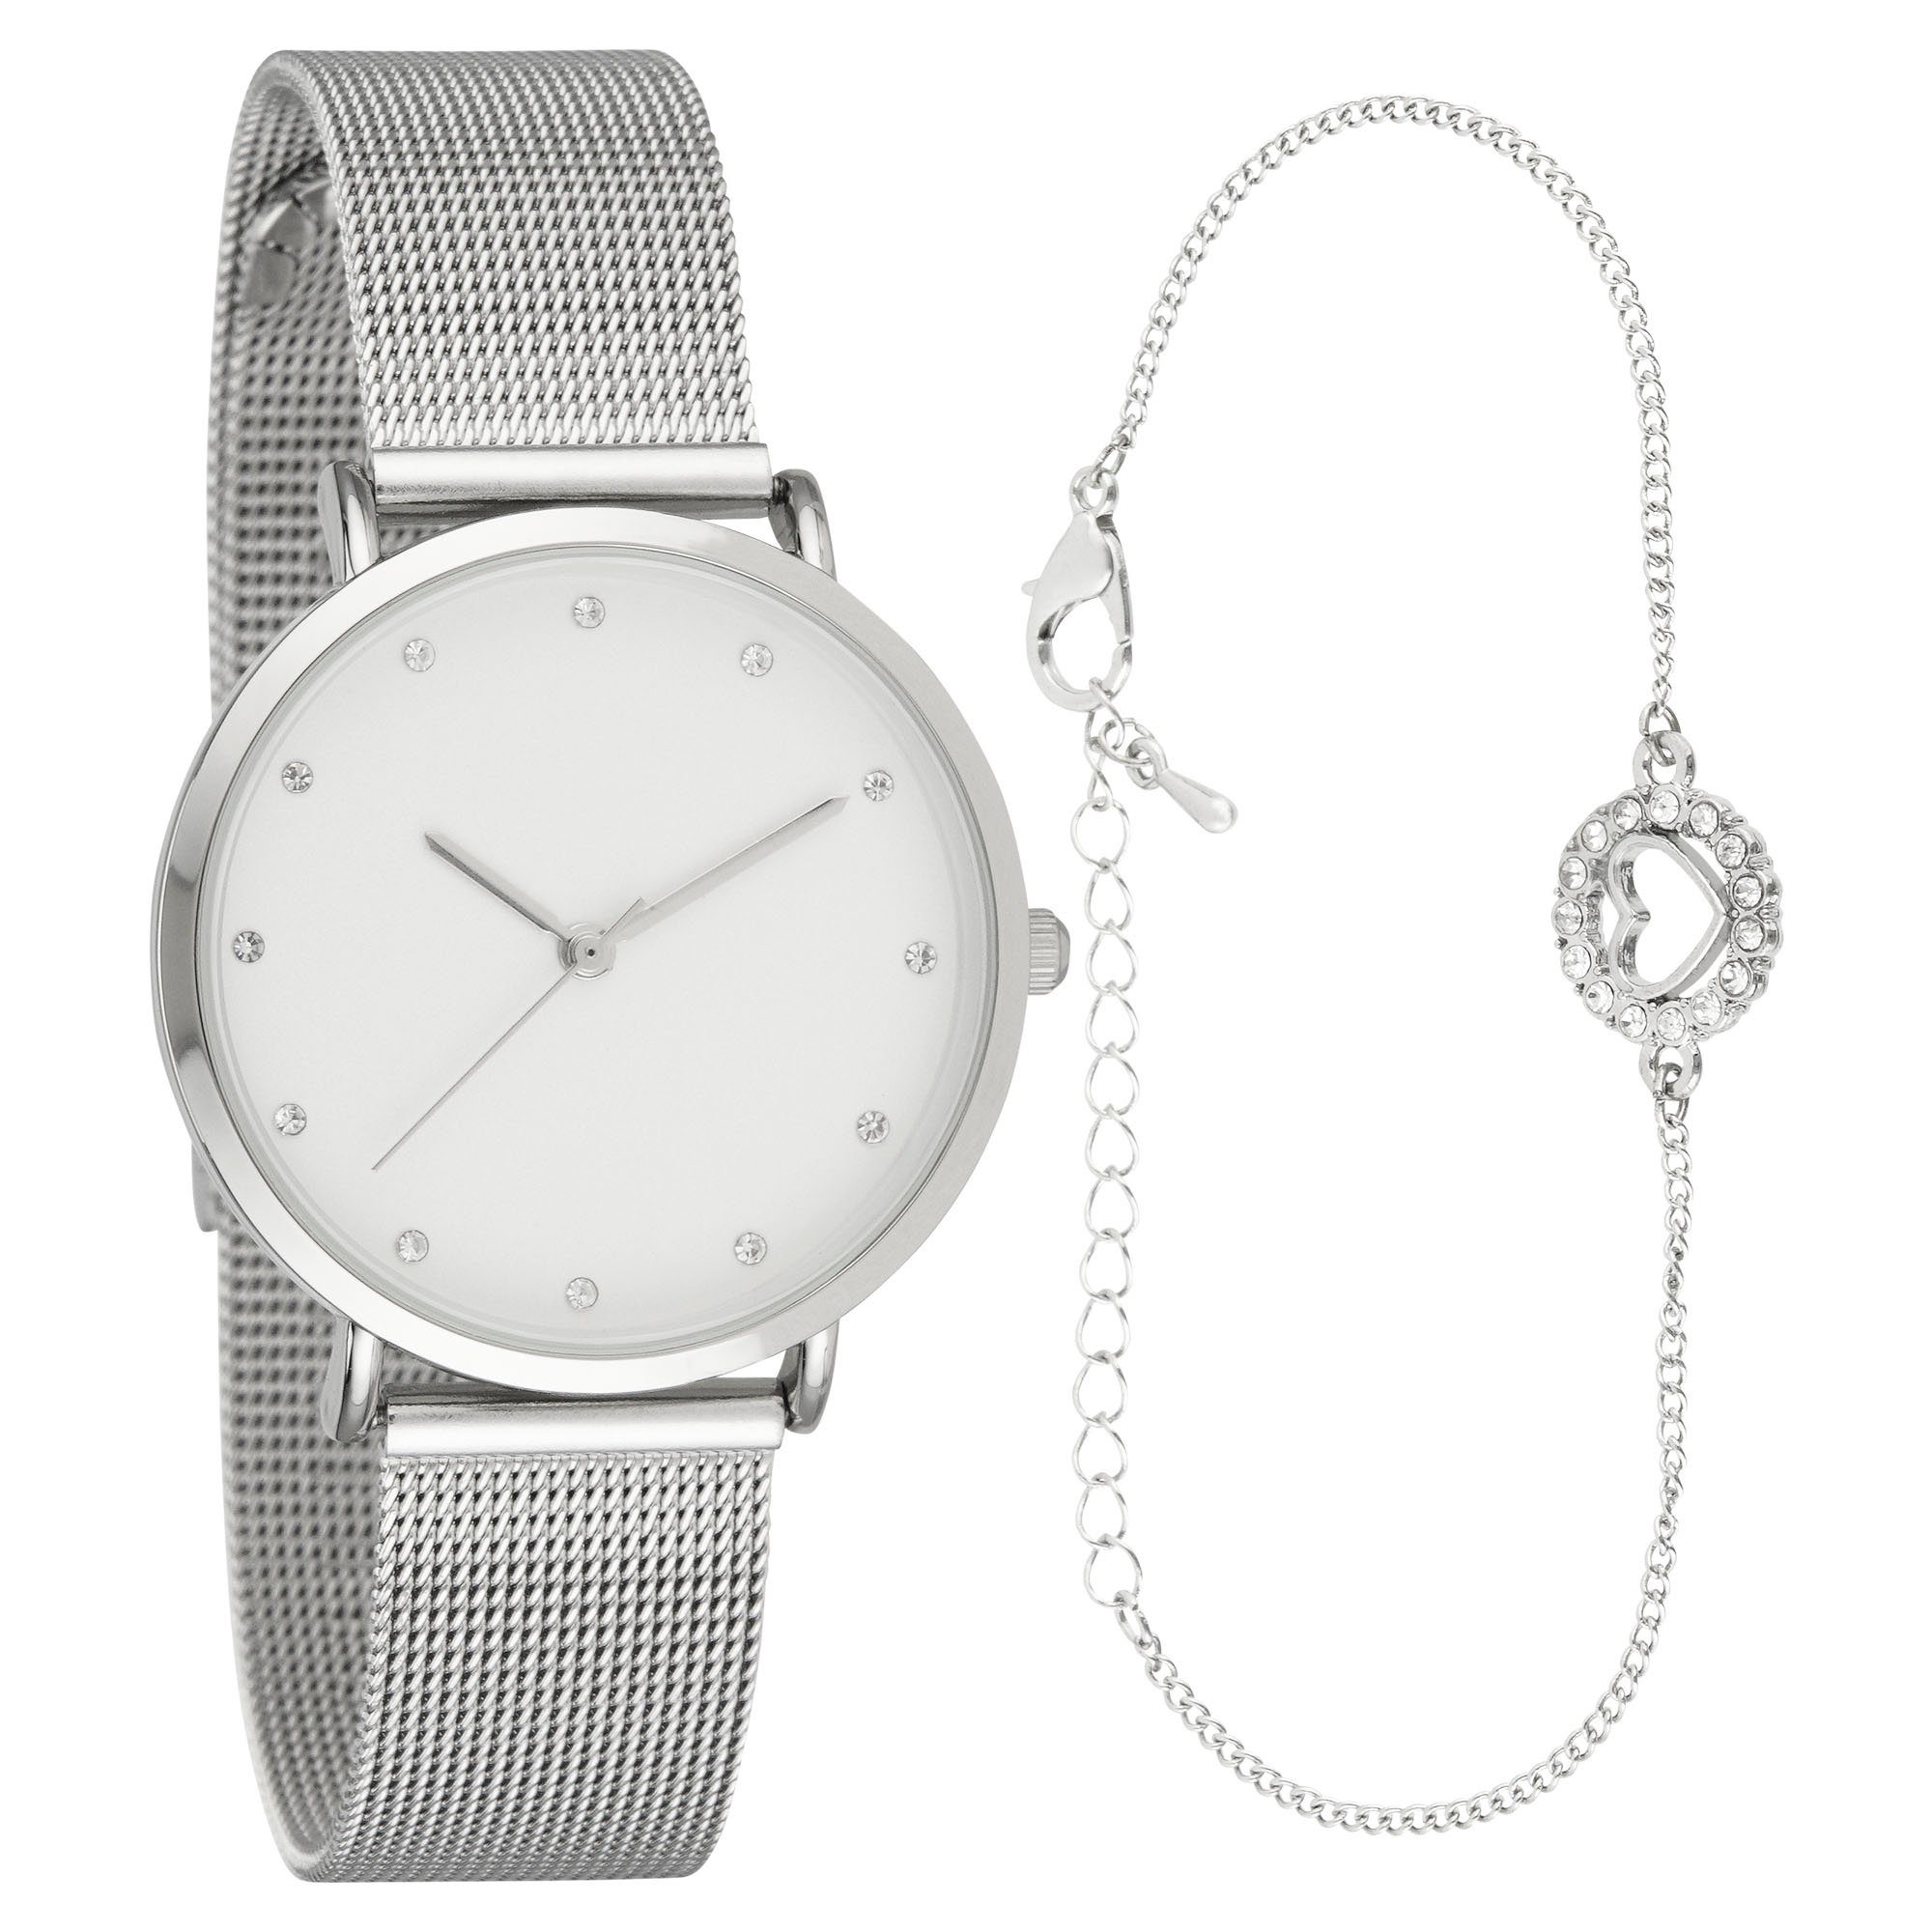 SONSTIGE Uhr »Damen Armbanduhr mit Metallarmband & schönem Schmuckarmband  Schmuckset Quarzuhr - 2-LD5250-4« online kaufen | OTTO